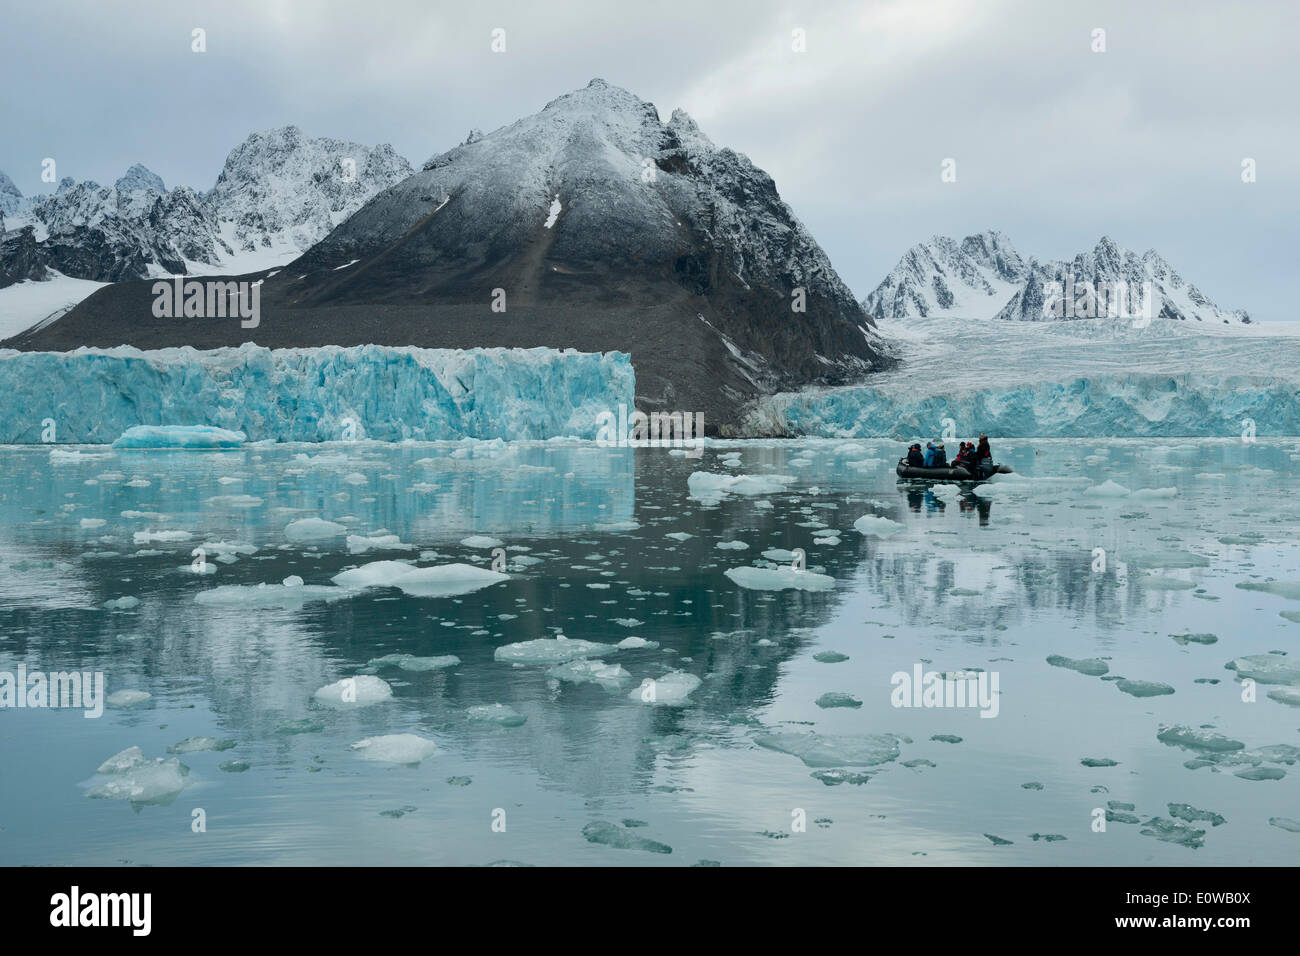 Les touristes dans un canot en caoutchouc à l'avant de la jante de l'Monacobreen Liefdefjorden, Glacier, Spitsbergen, Svalbard Islands Banque D'Images